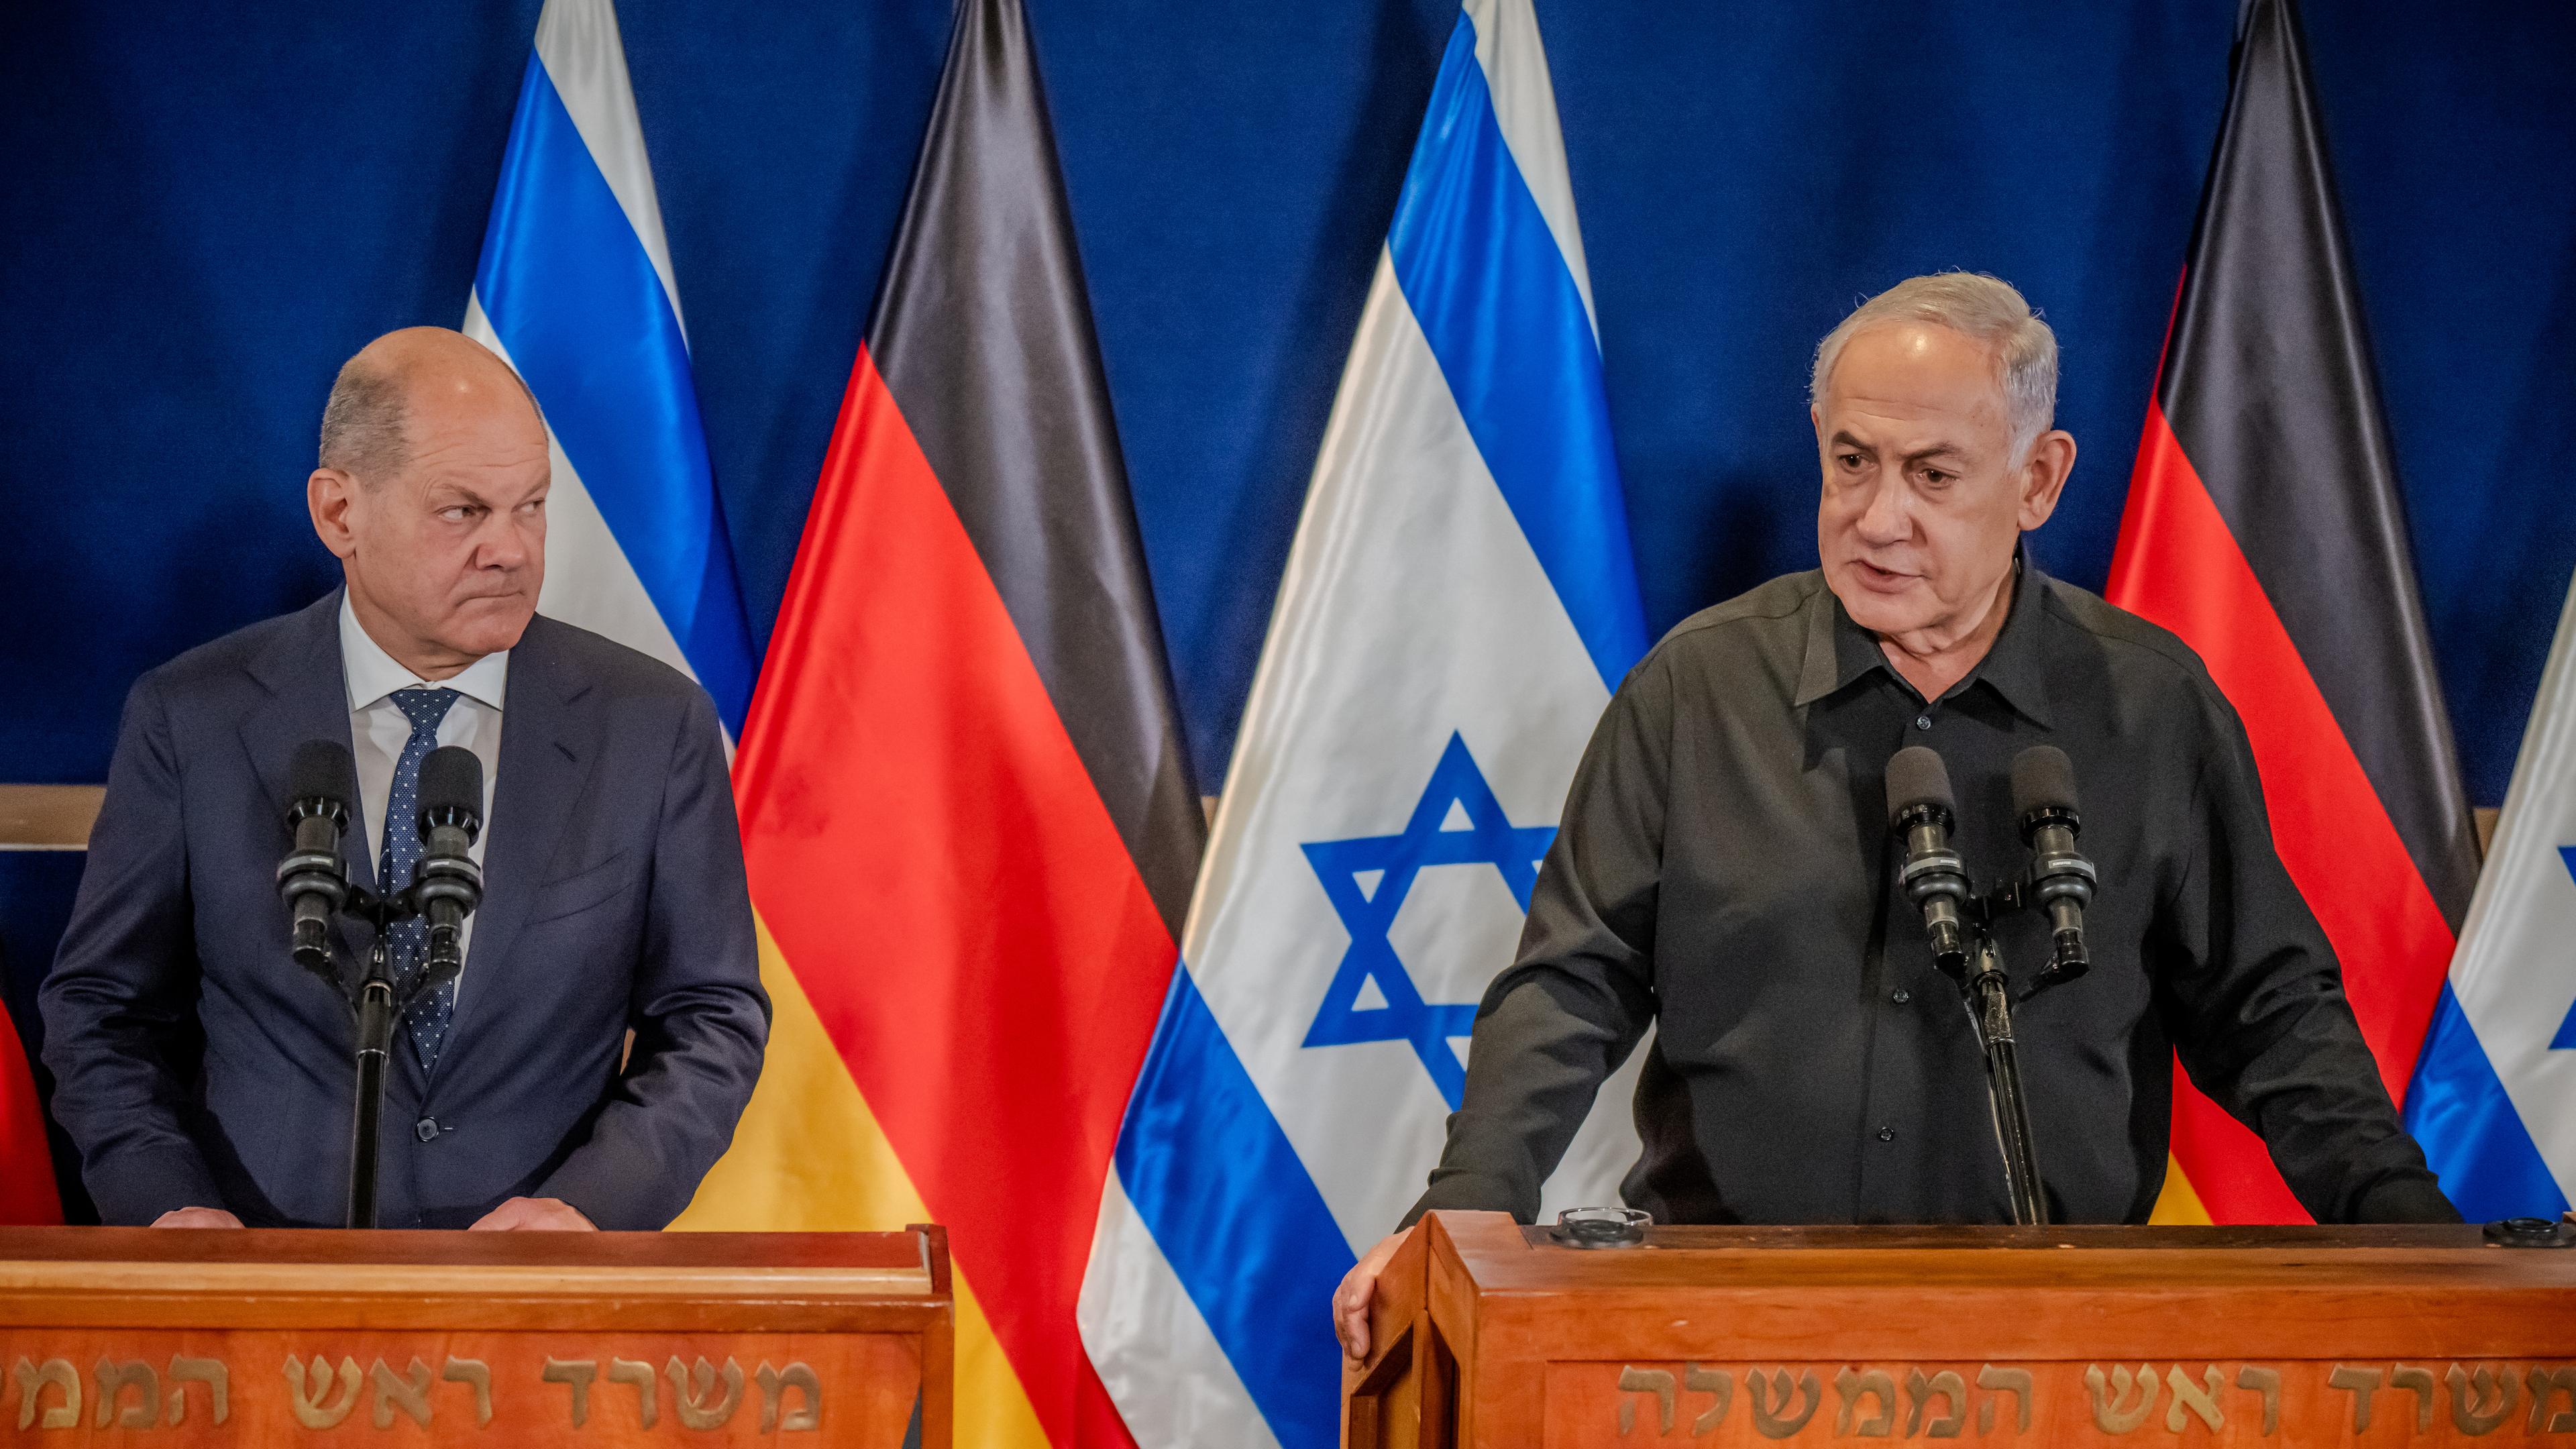 Bundeskanzler Scholz (links) und Ministerpräsident Netanjahu (rechts) an Rednerpulten - im Hintergrund Flaggen Deutschlands und Israels.